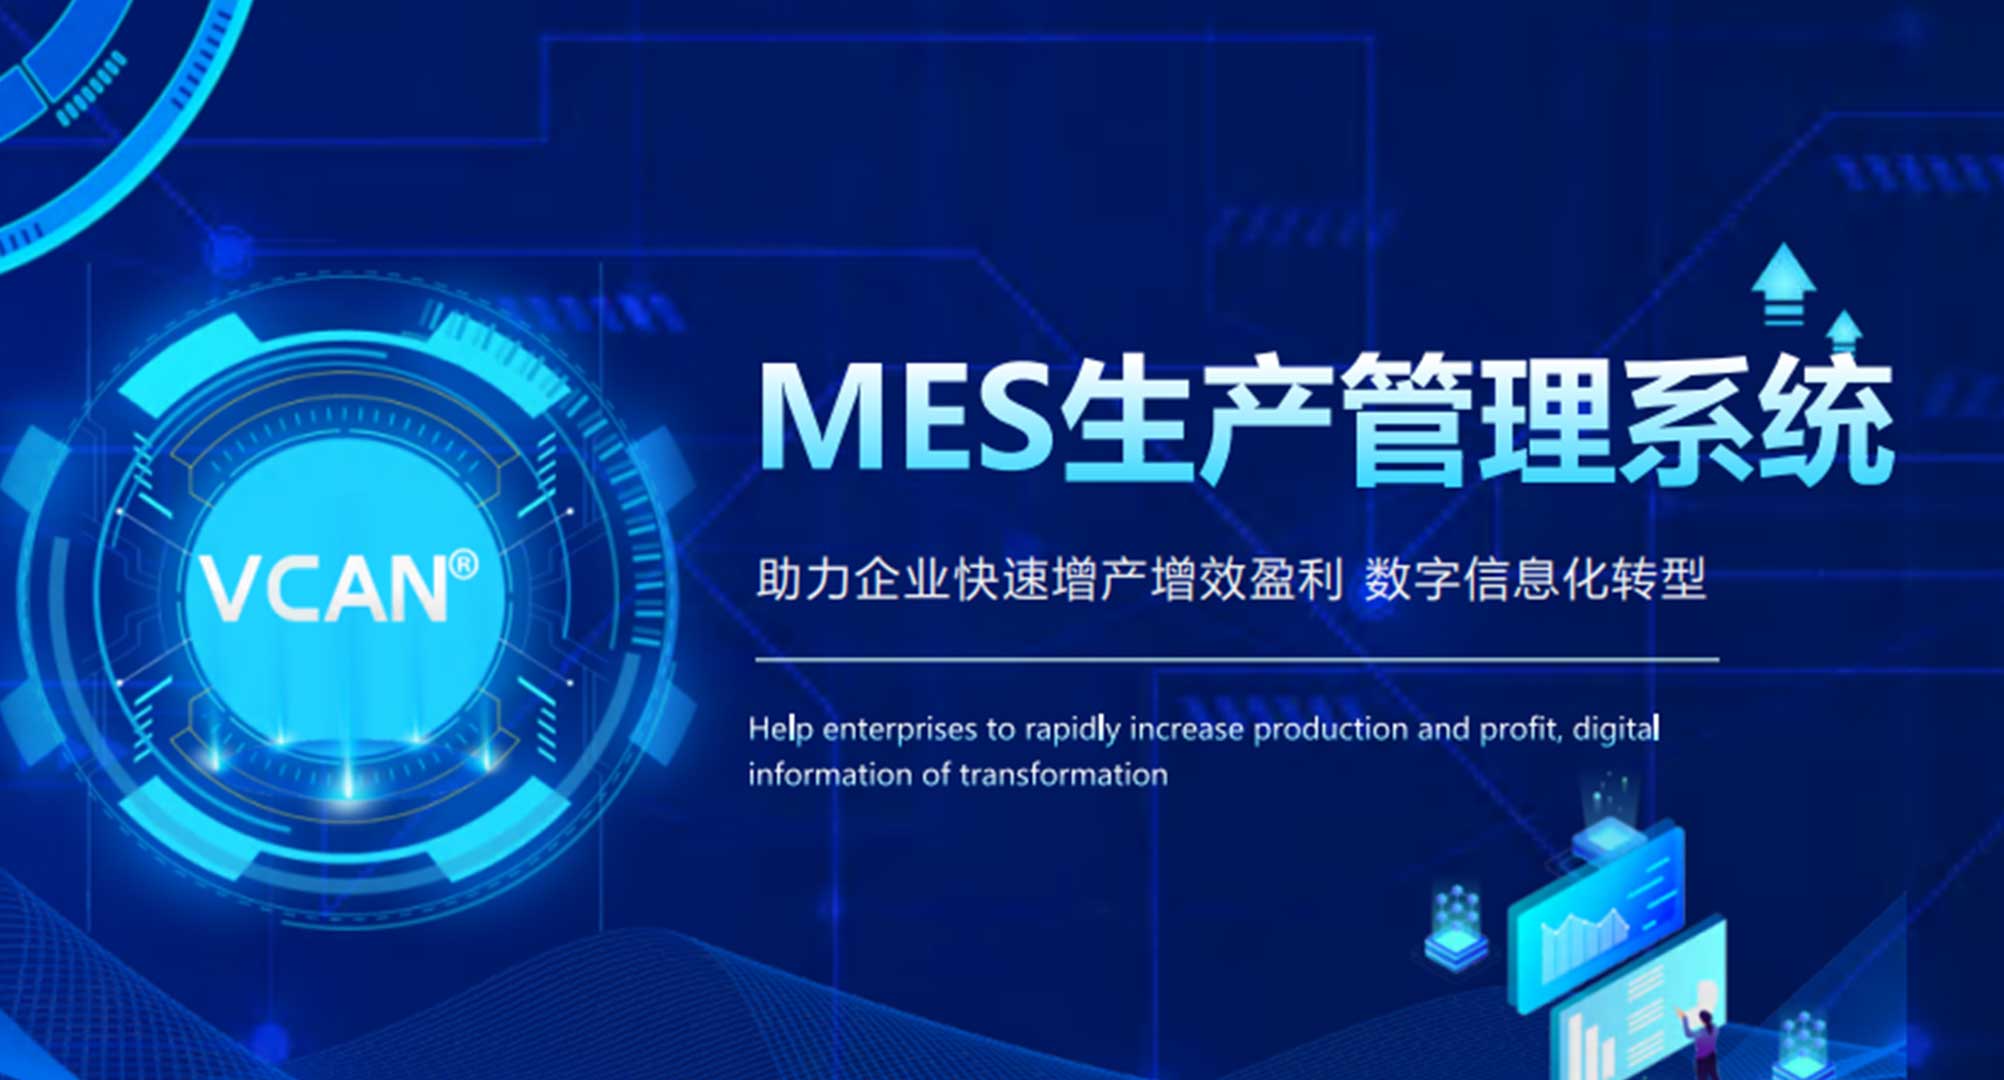 La duodécima conferencia de prensa "Registro de innovación empresarial de Shenzhen"